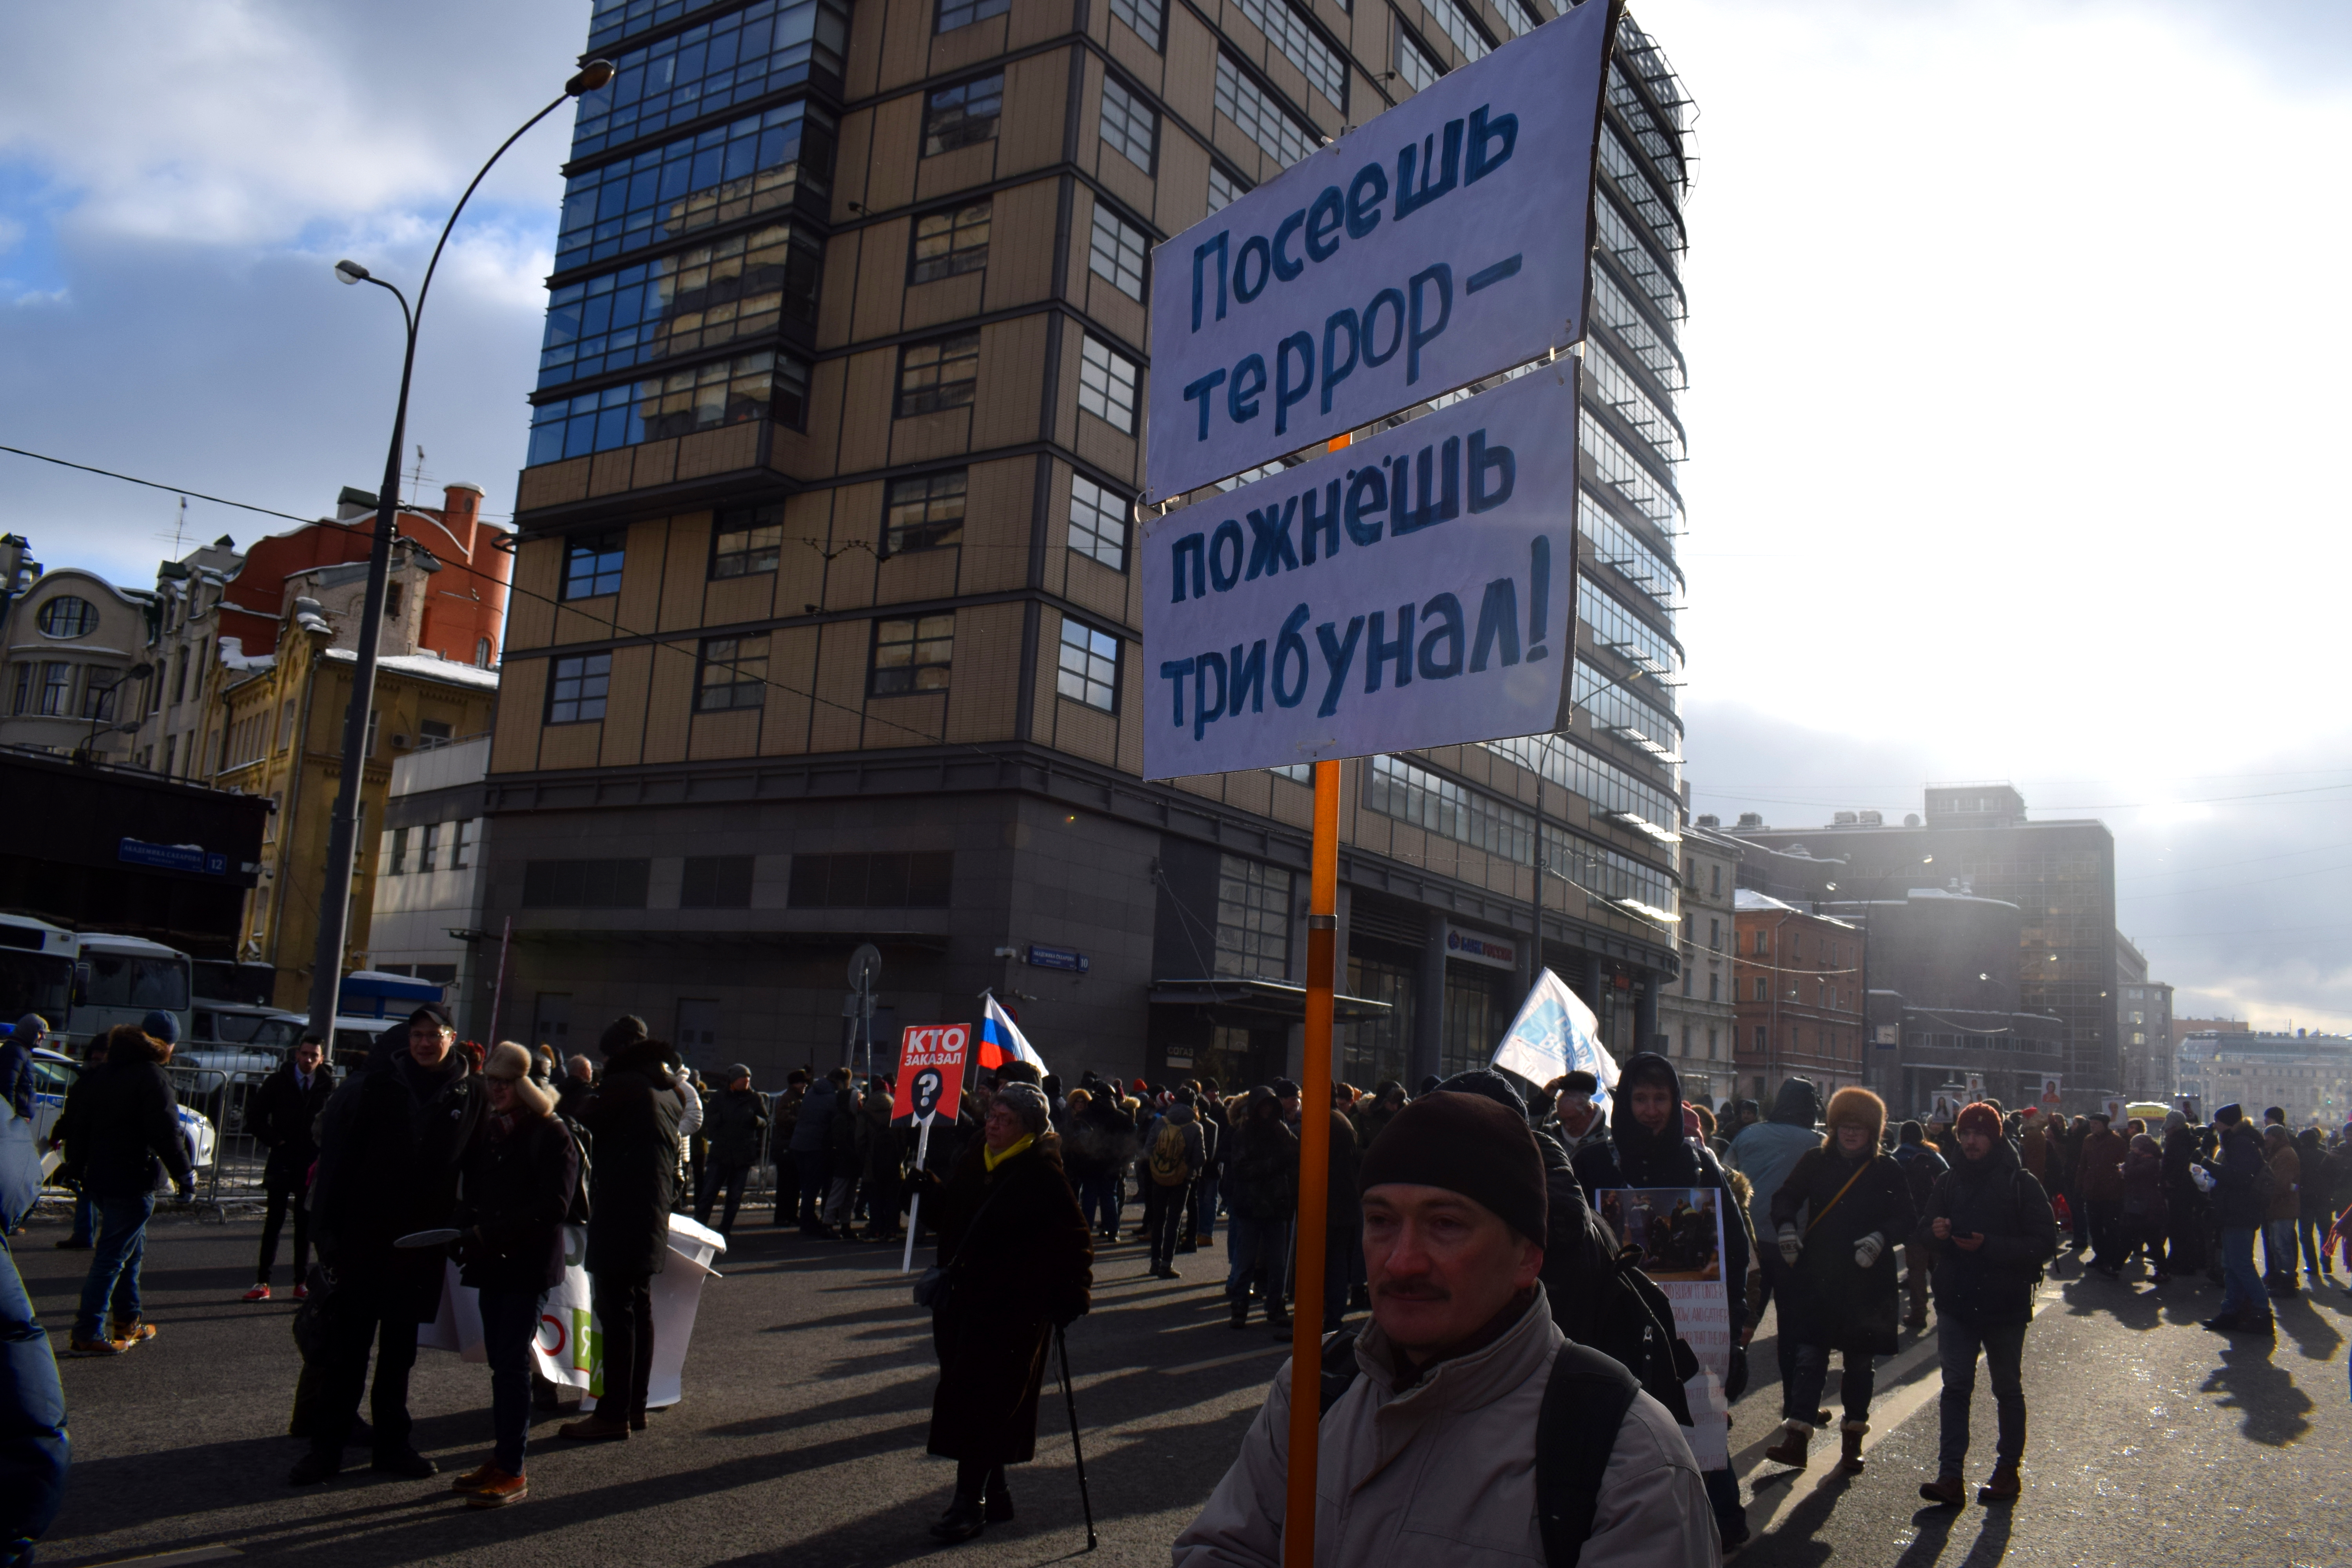 Boris Nemtsov March Moscow 2018 